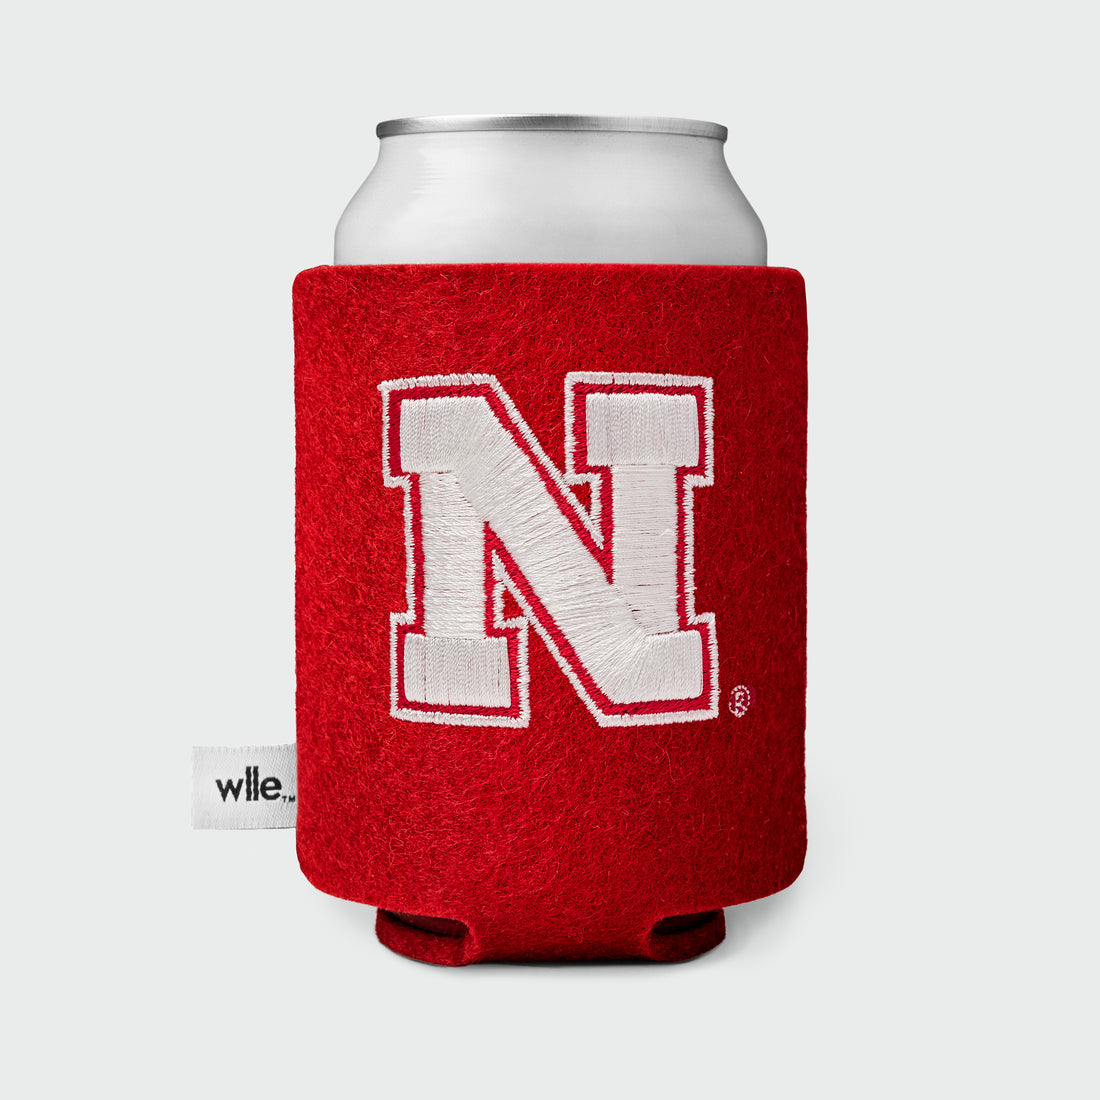 University of Nebraska wlle™ Drink Sweater - Nebraska White N - Red